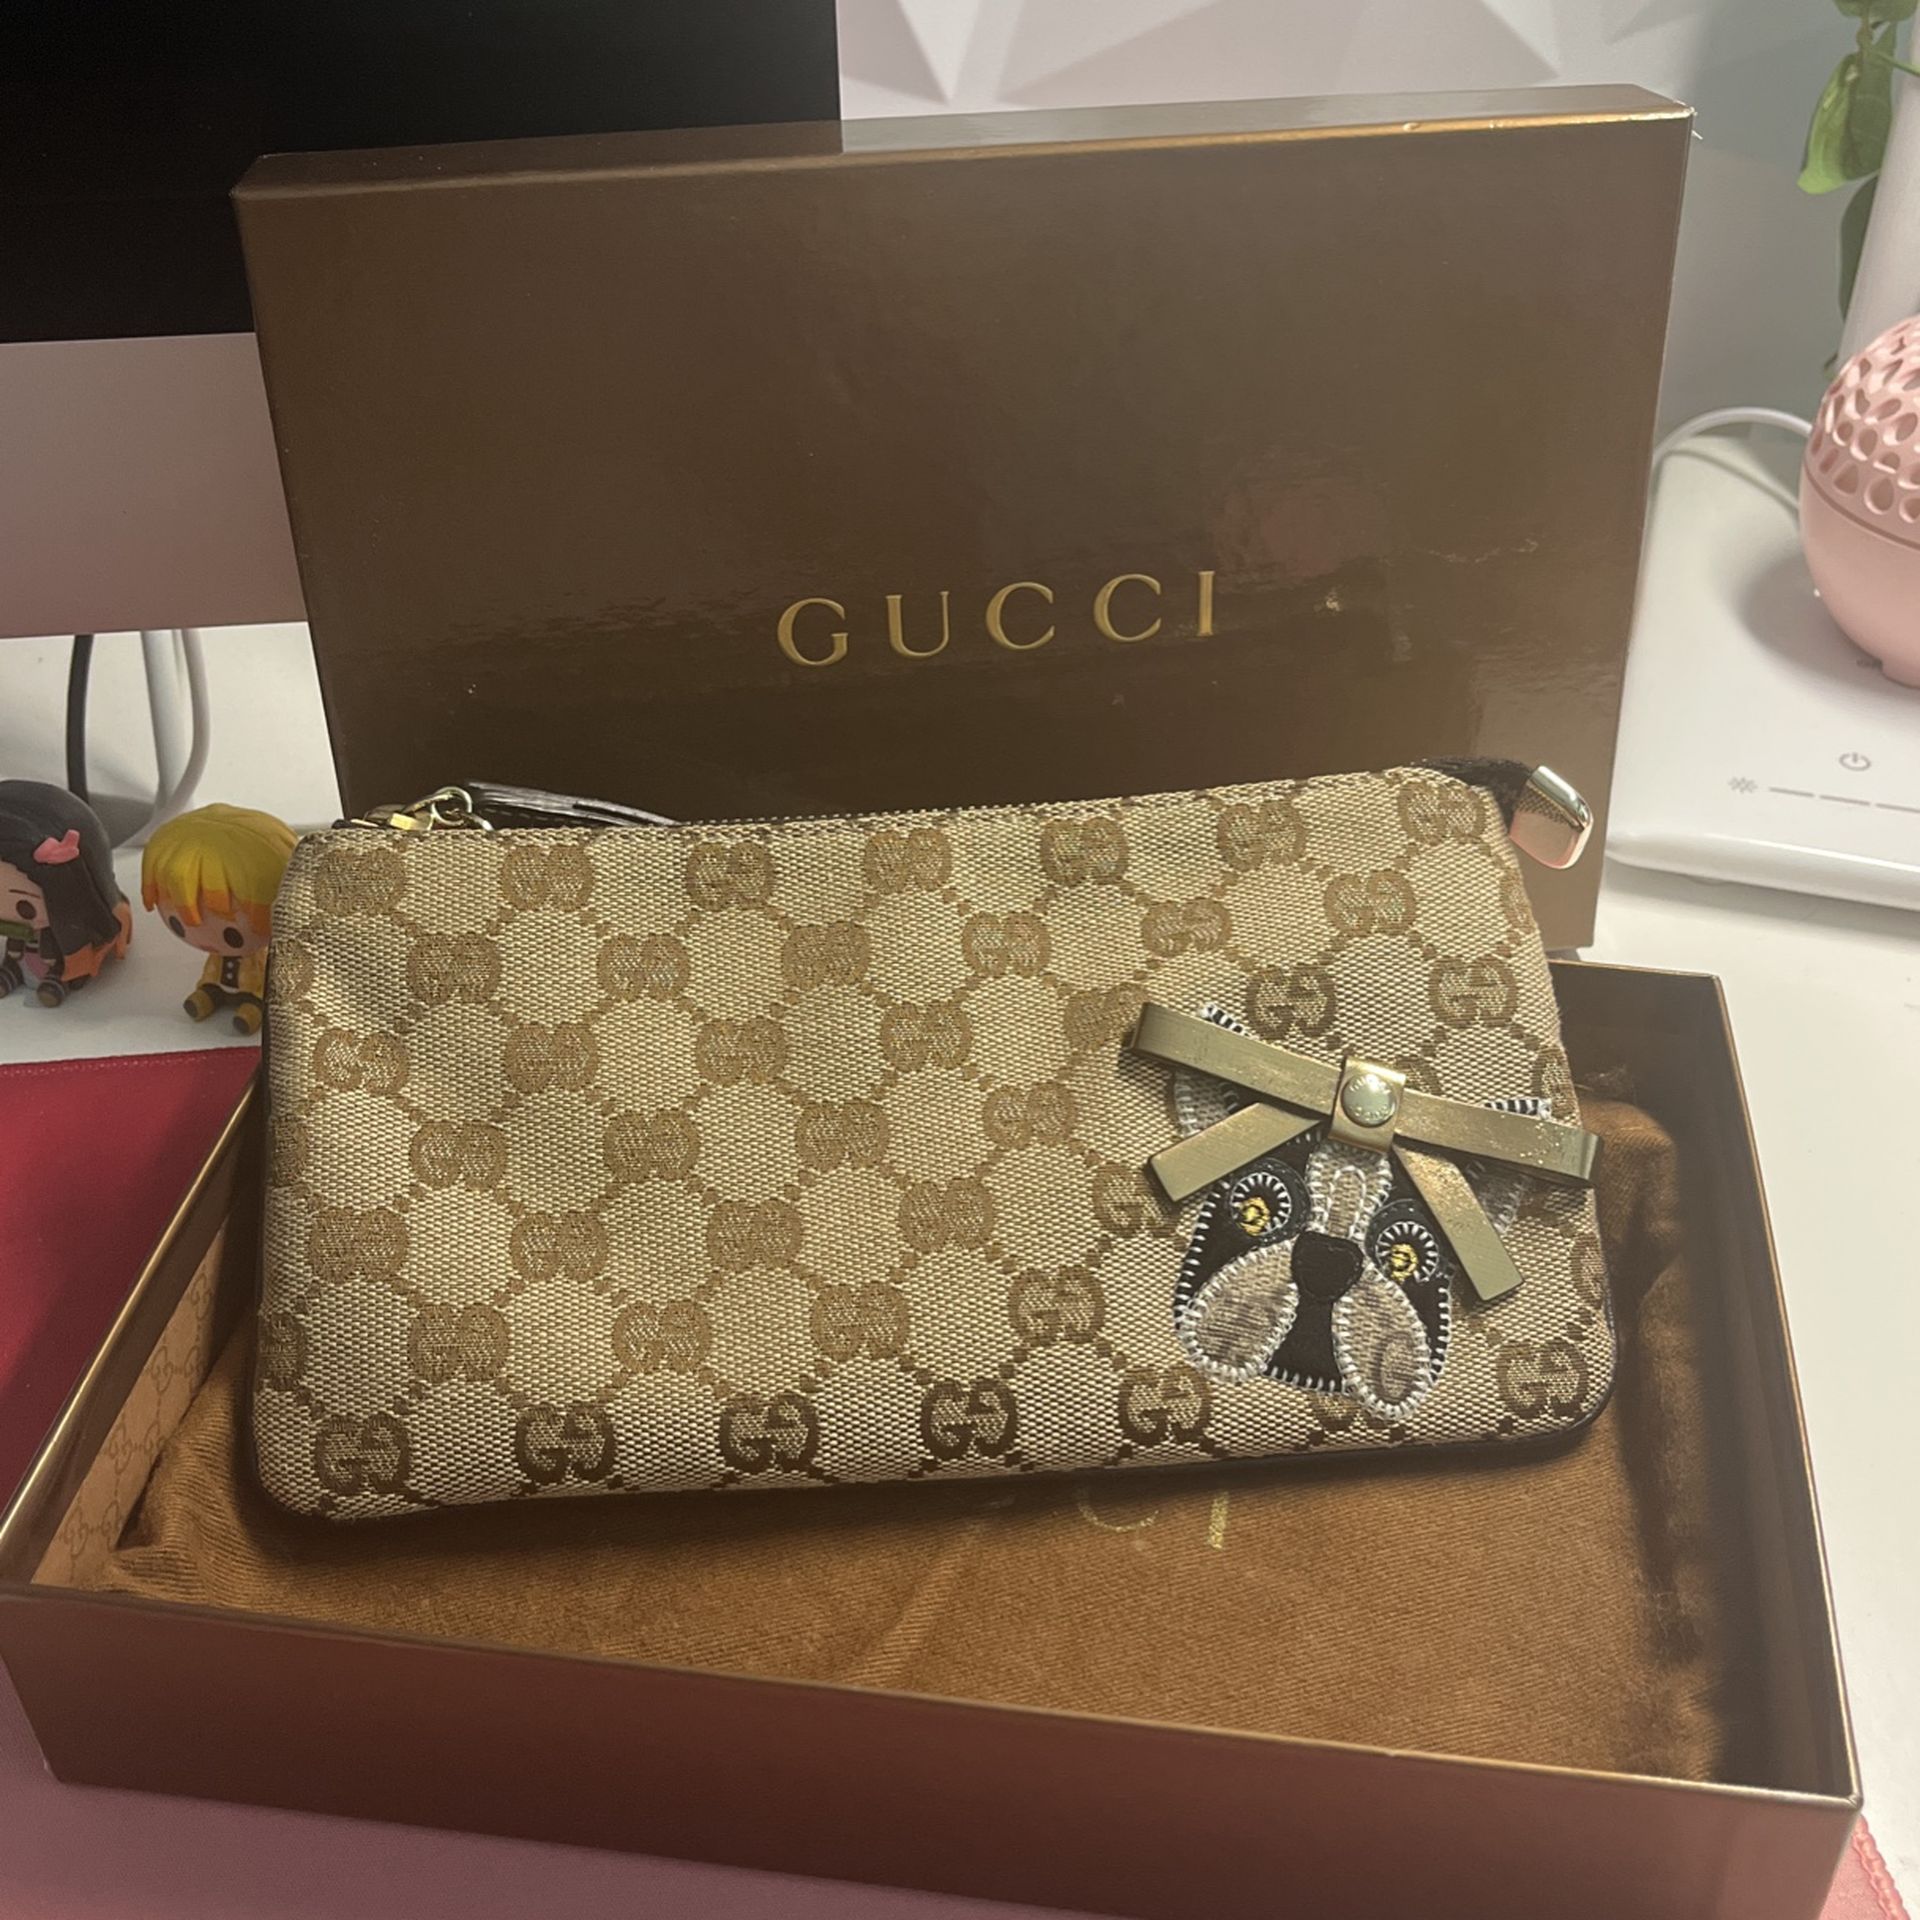 Special edition & collectors edition Gucci wristlet bag.